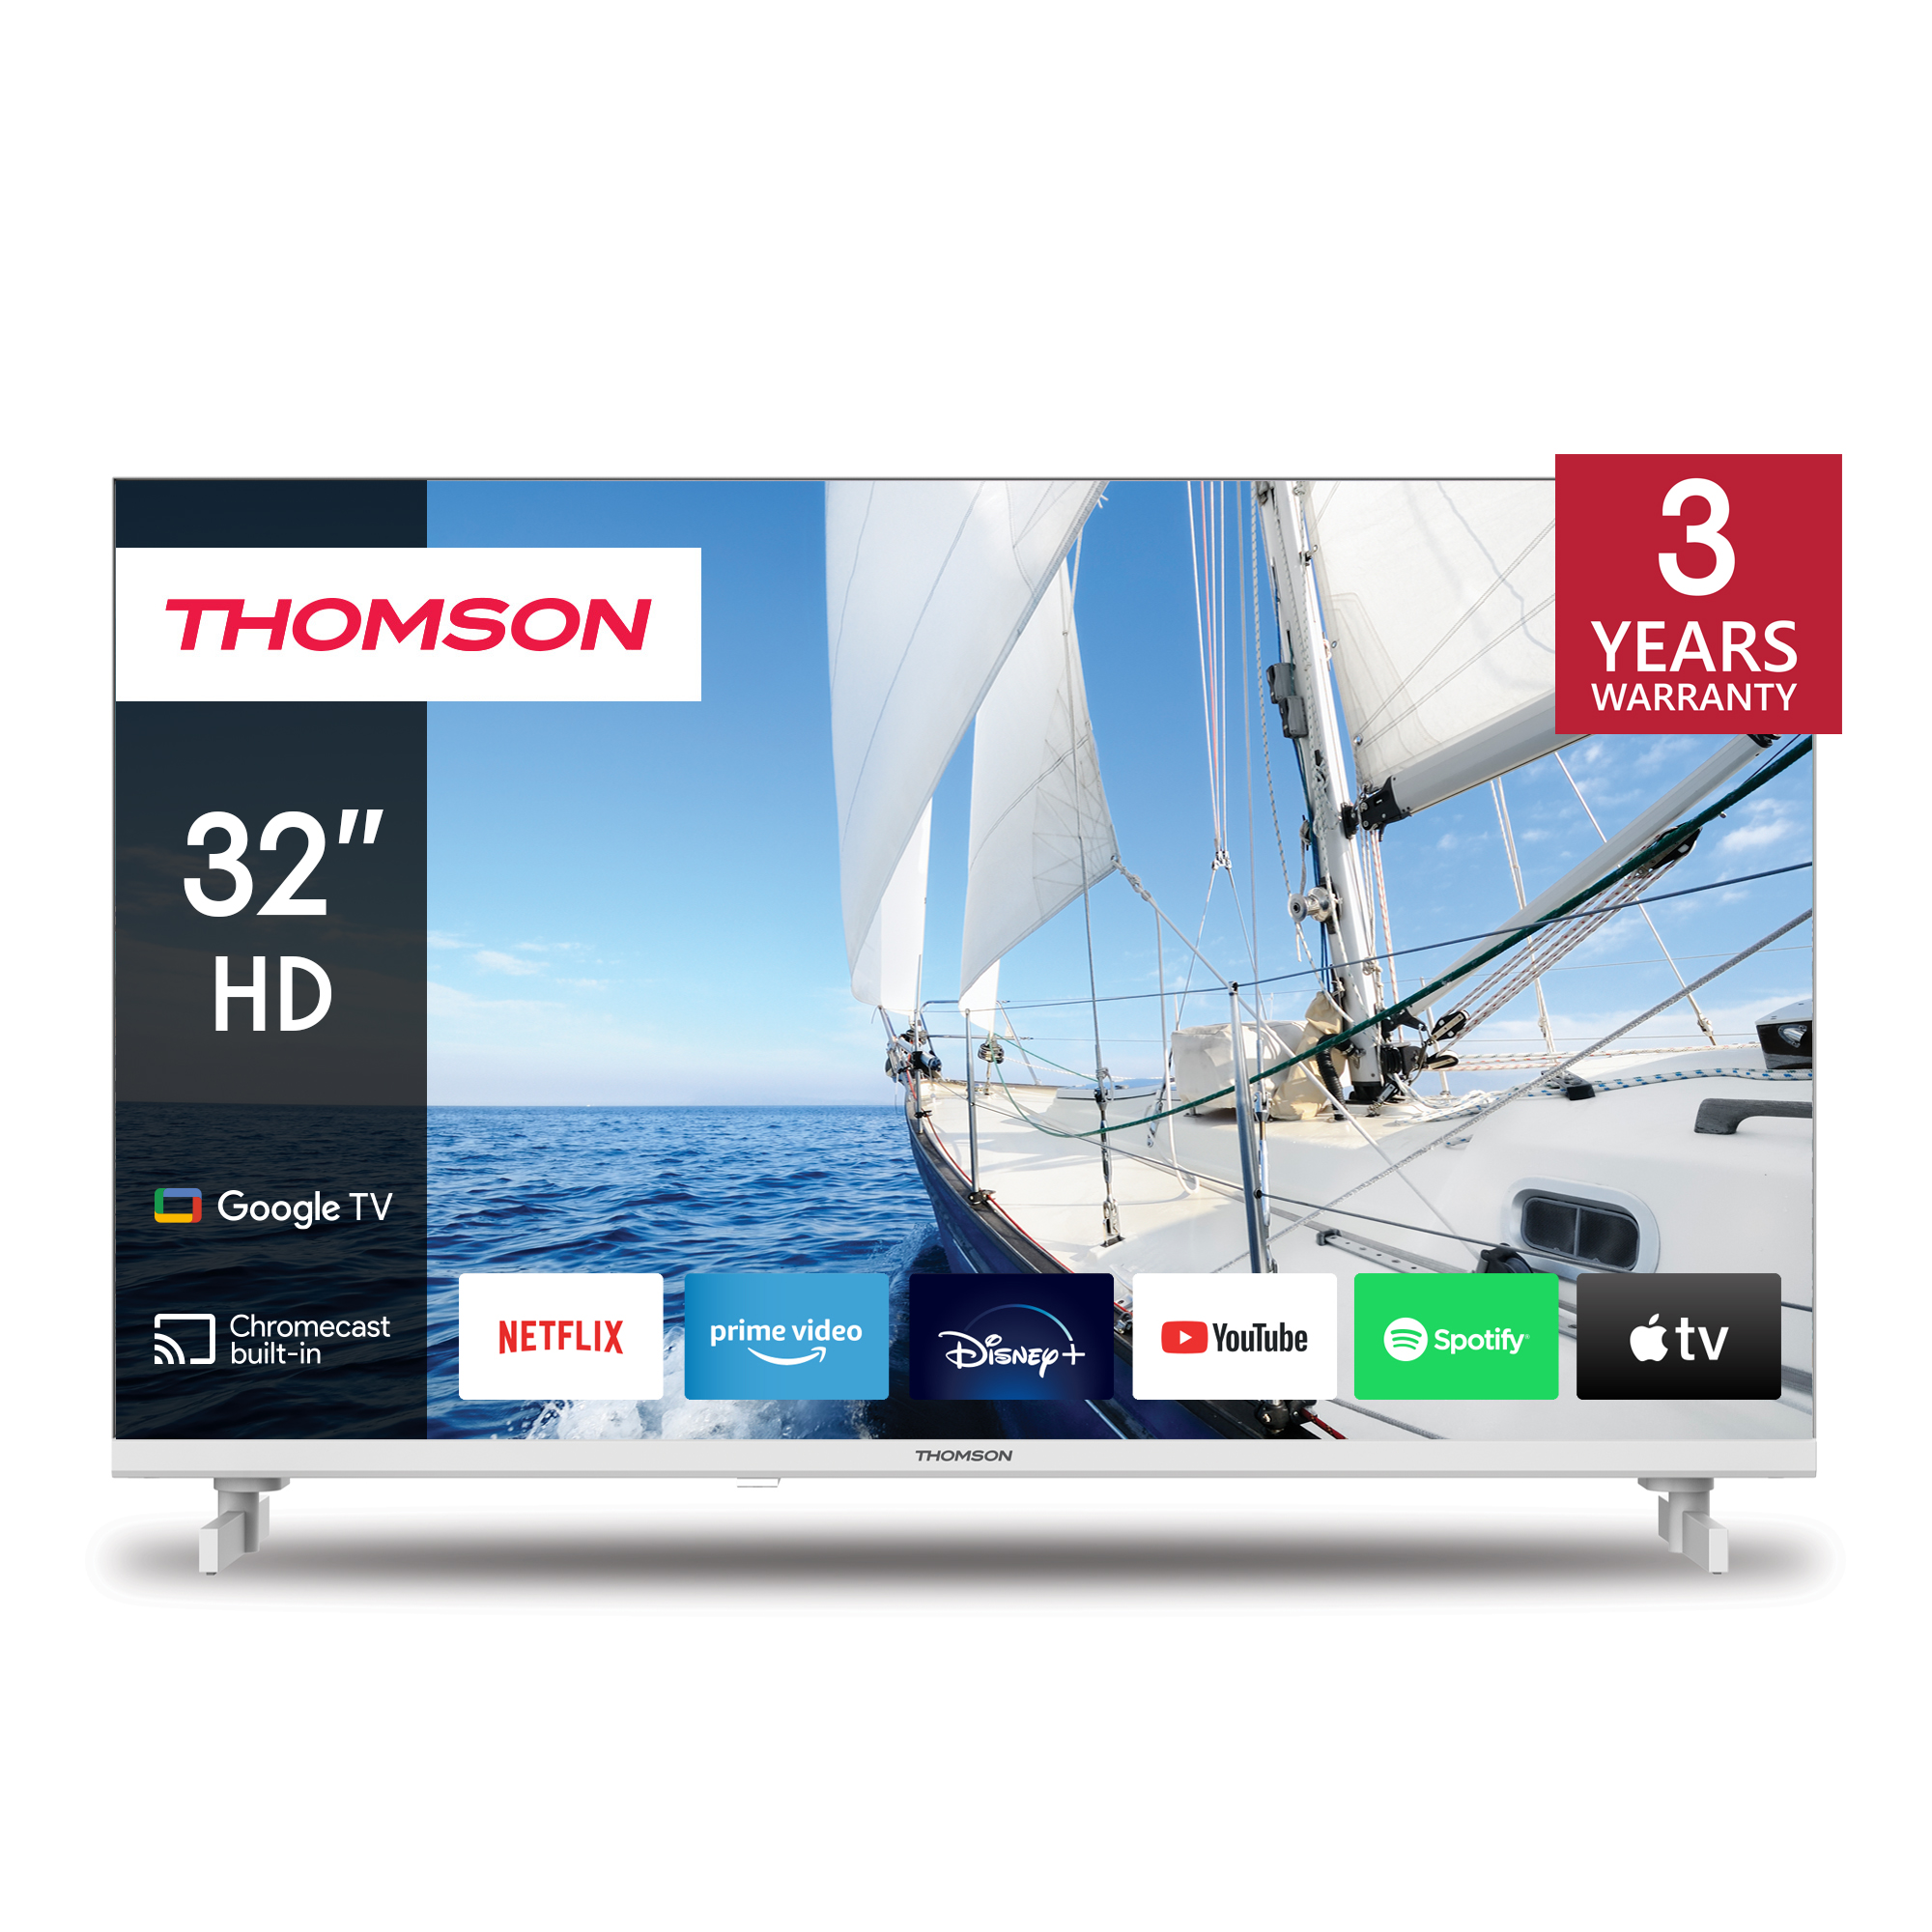 Thomson 32HG2S14W HD Google TV - White